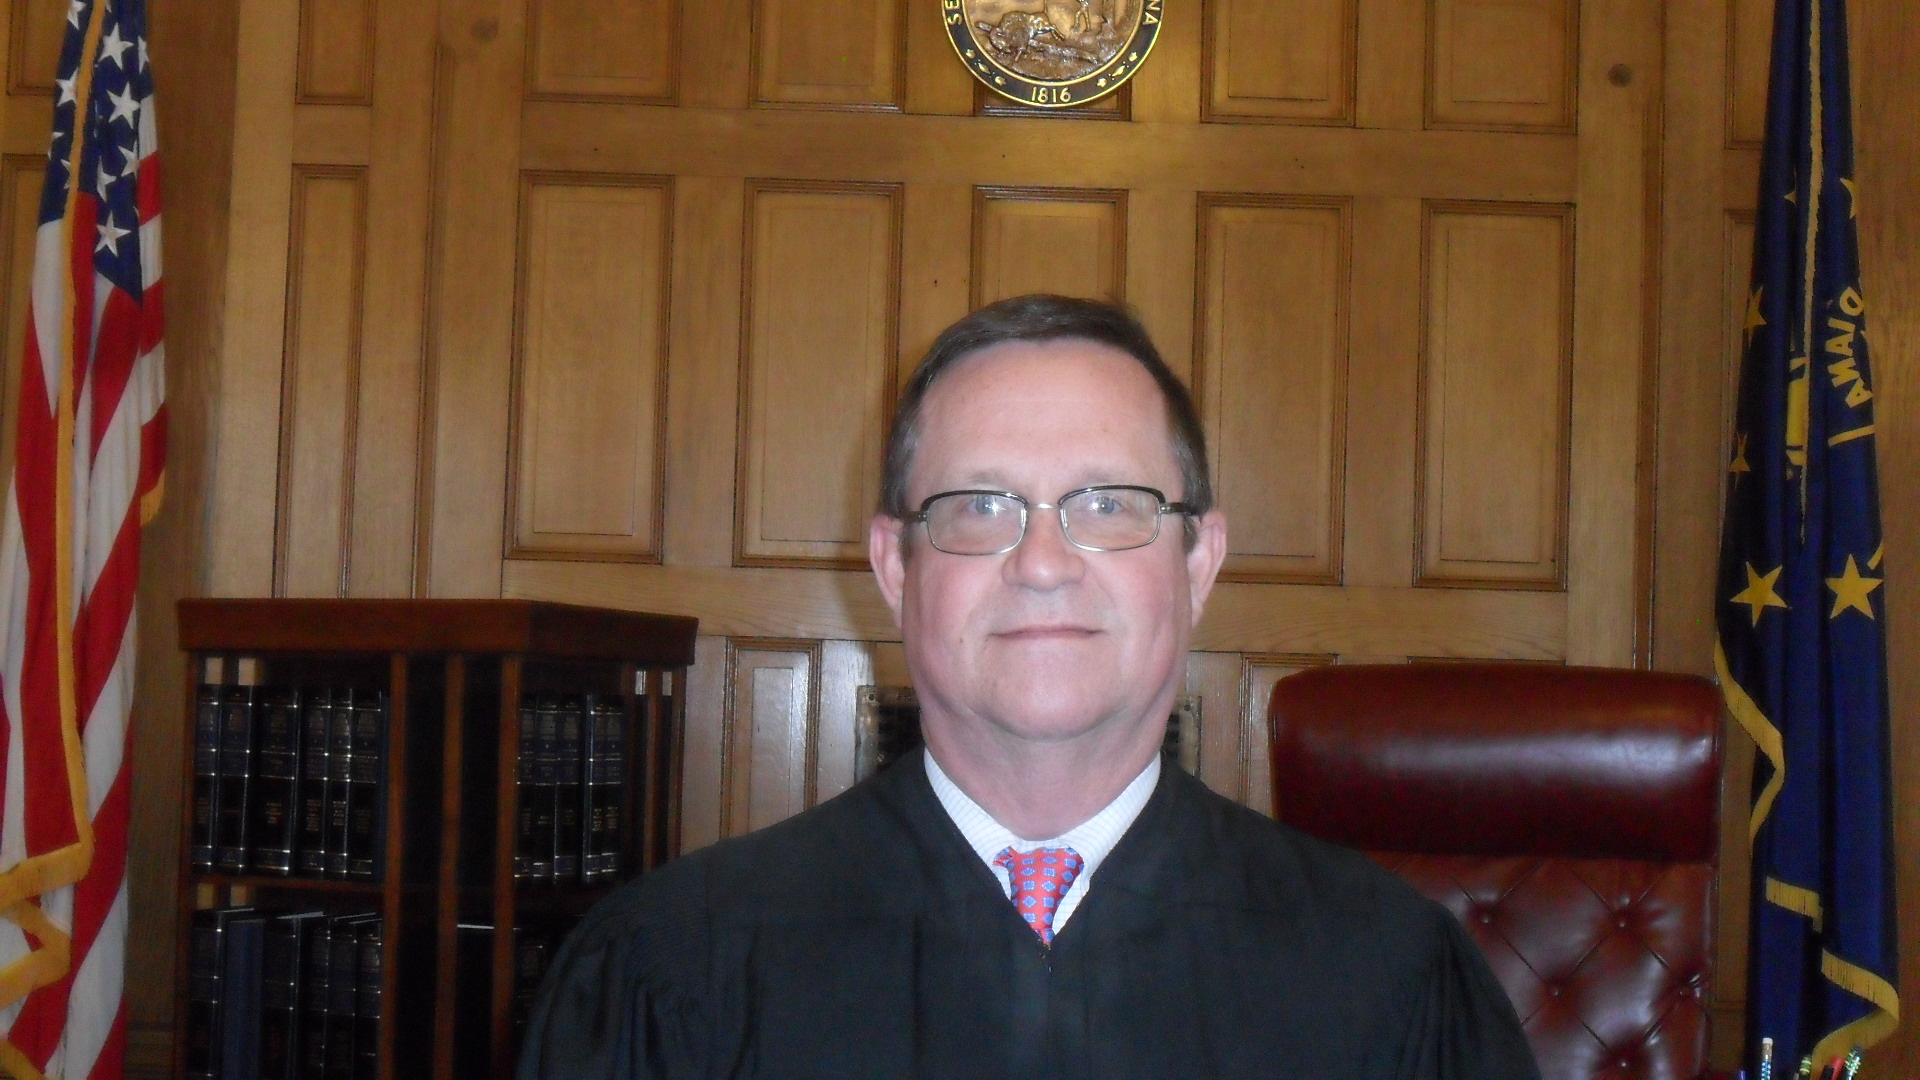 Judge Thomas R. Lett